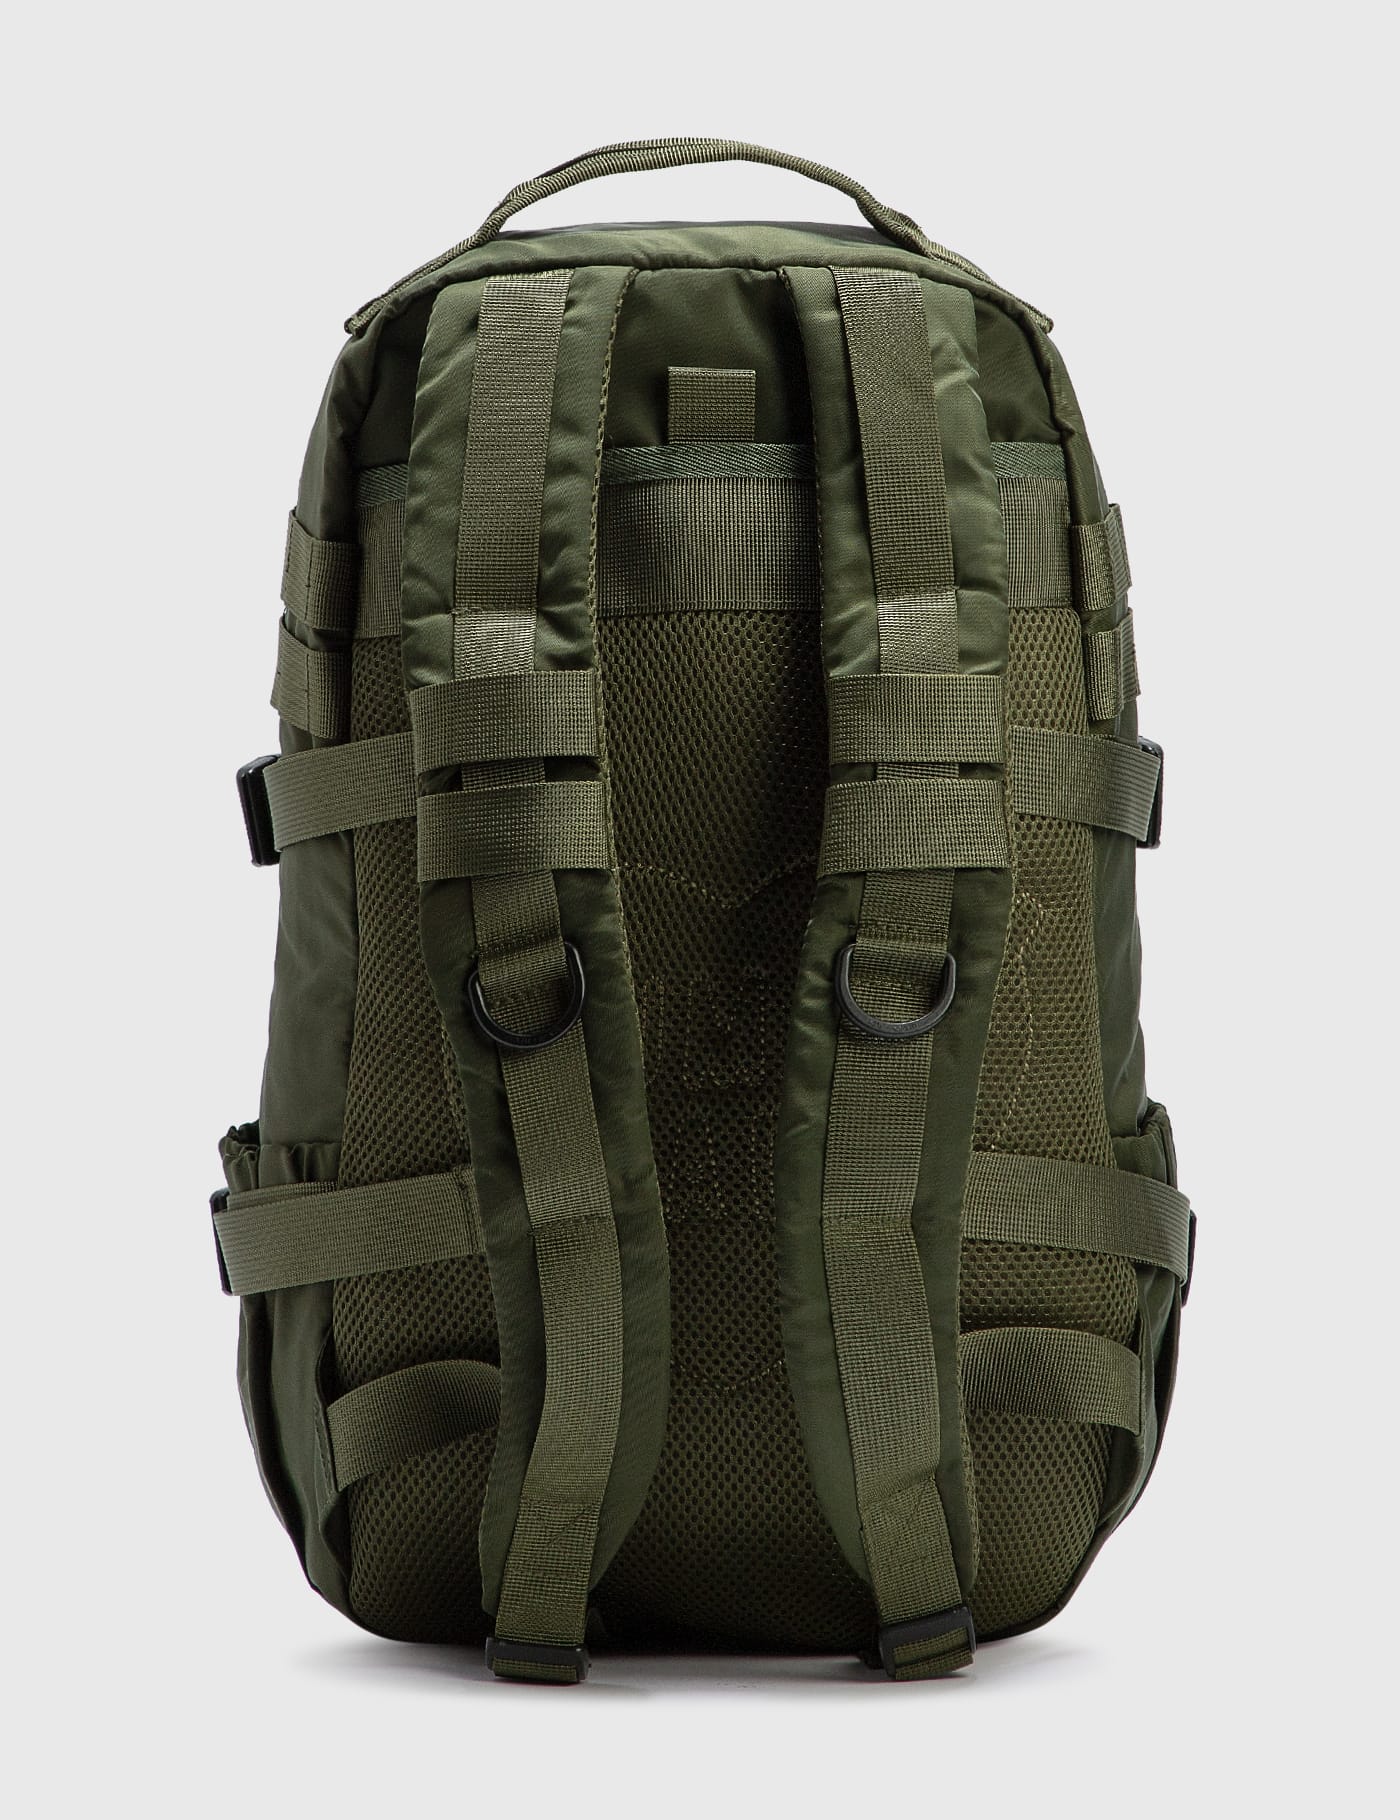 Human Made   Military Backpack   HBX   HYPEBEAST 為您搜羅全球潮流時尚品牌